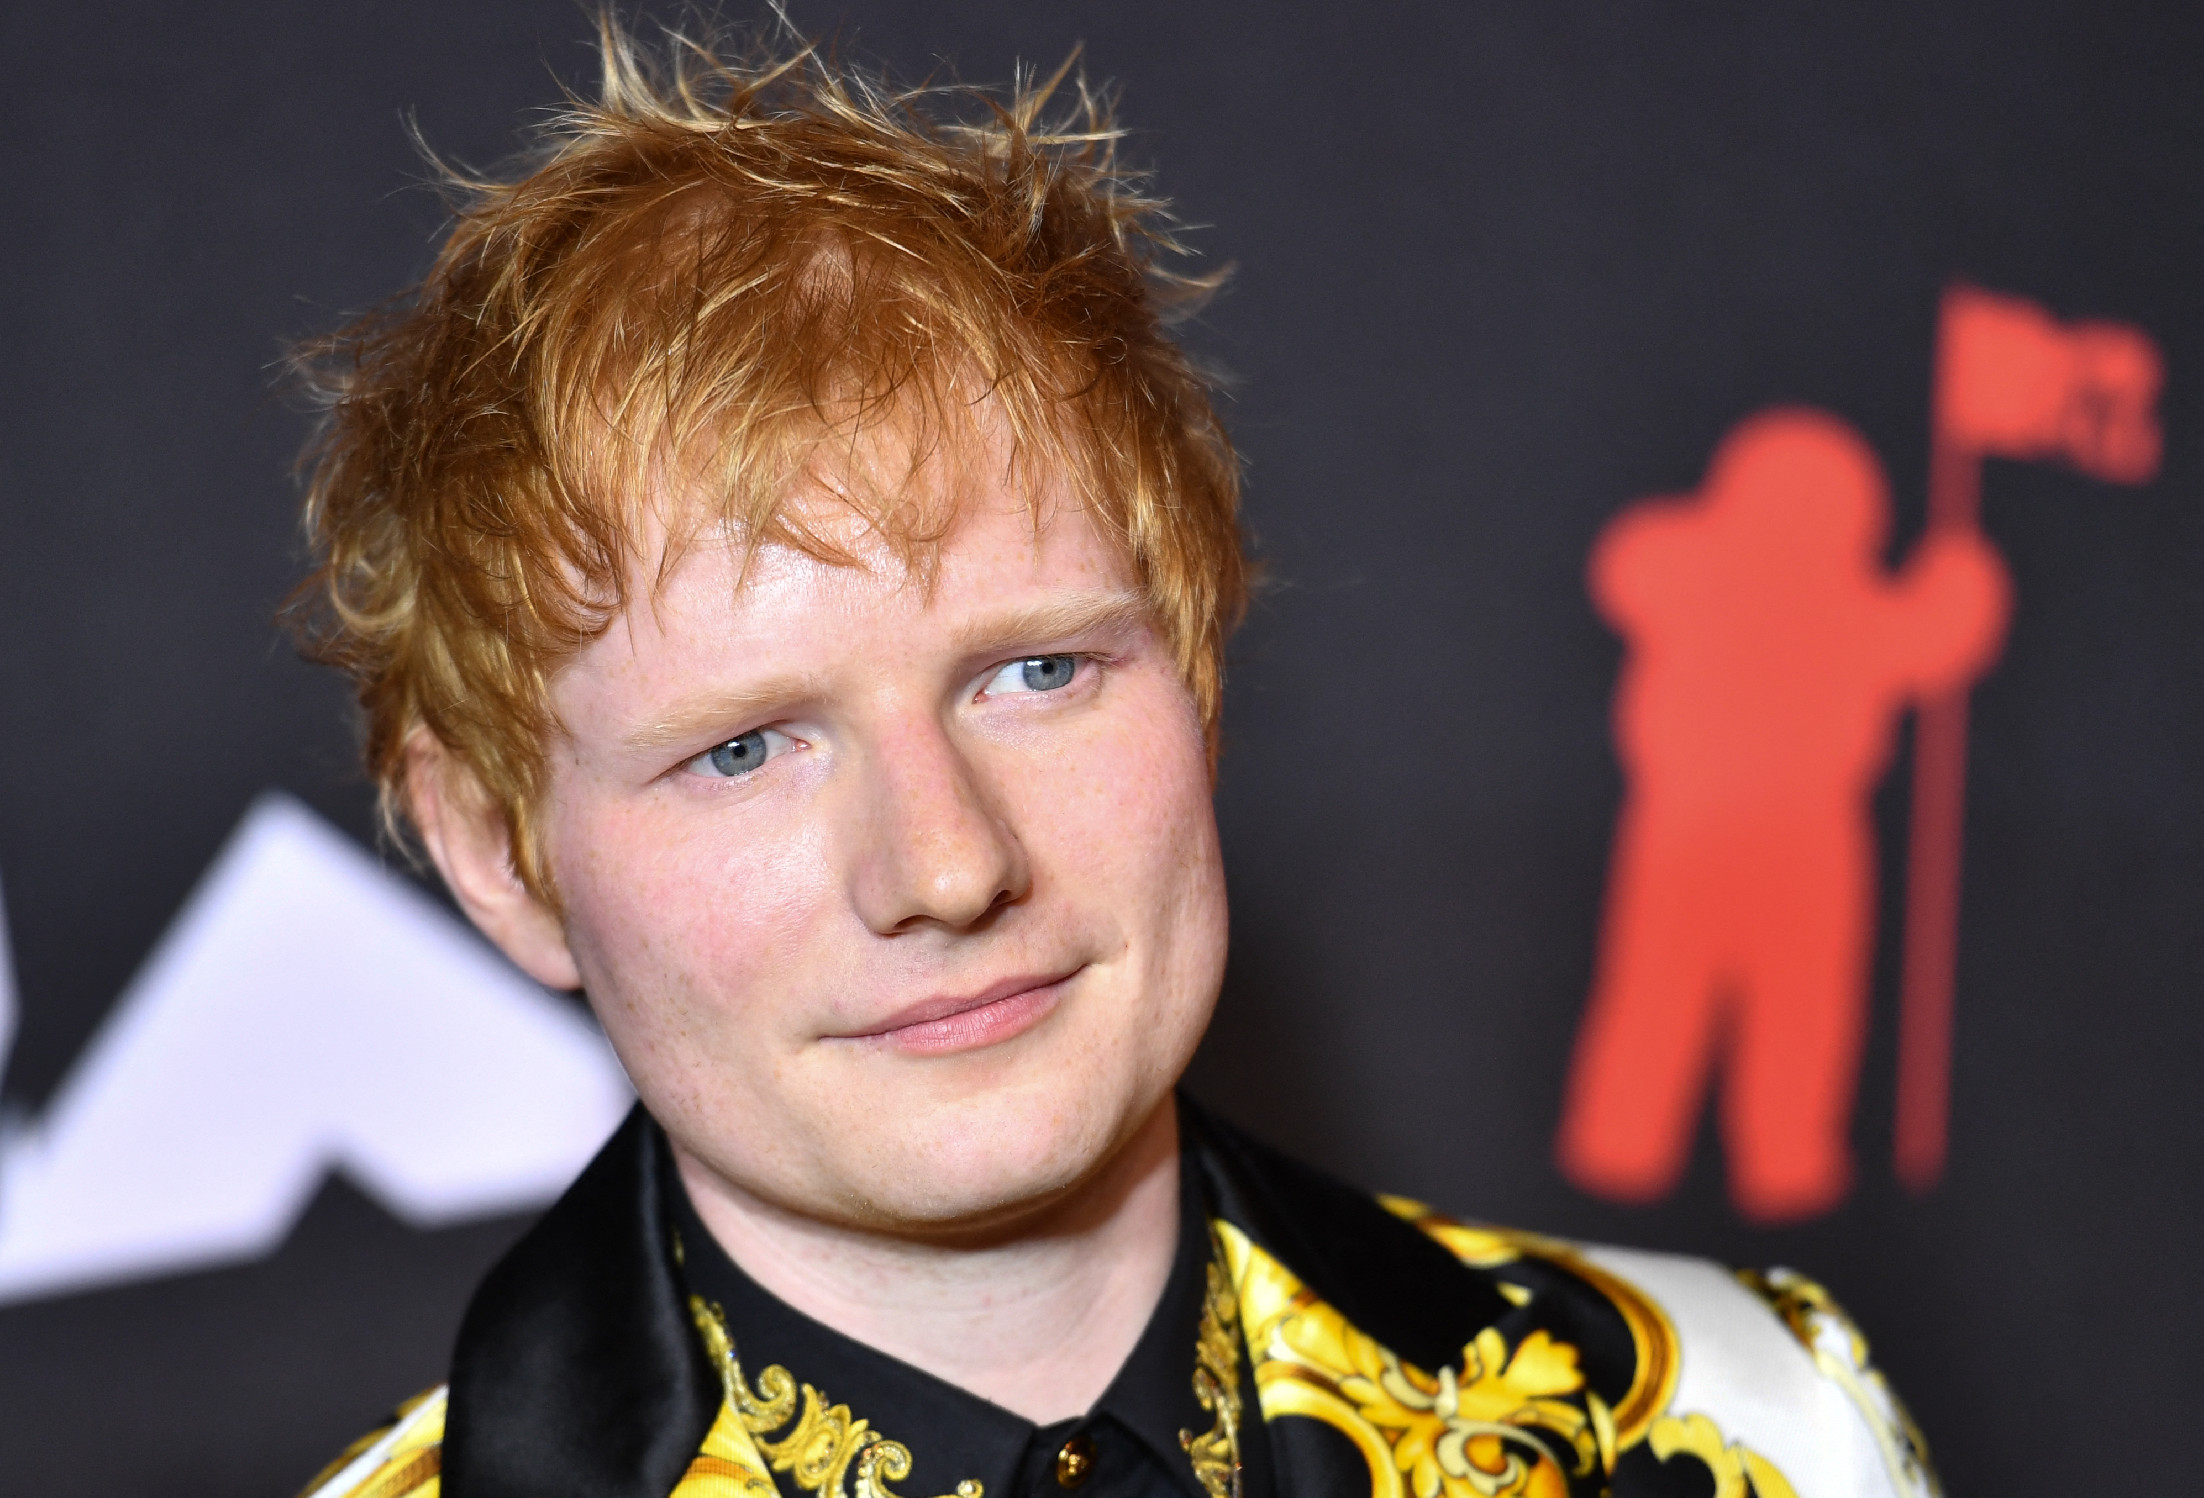 Ed Sheeran elkapta a koronavírust, mégsem áll le a koncertezéssel